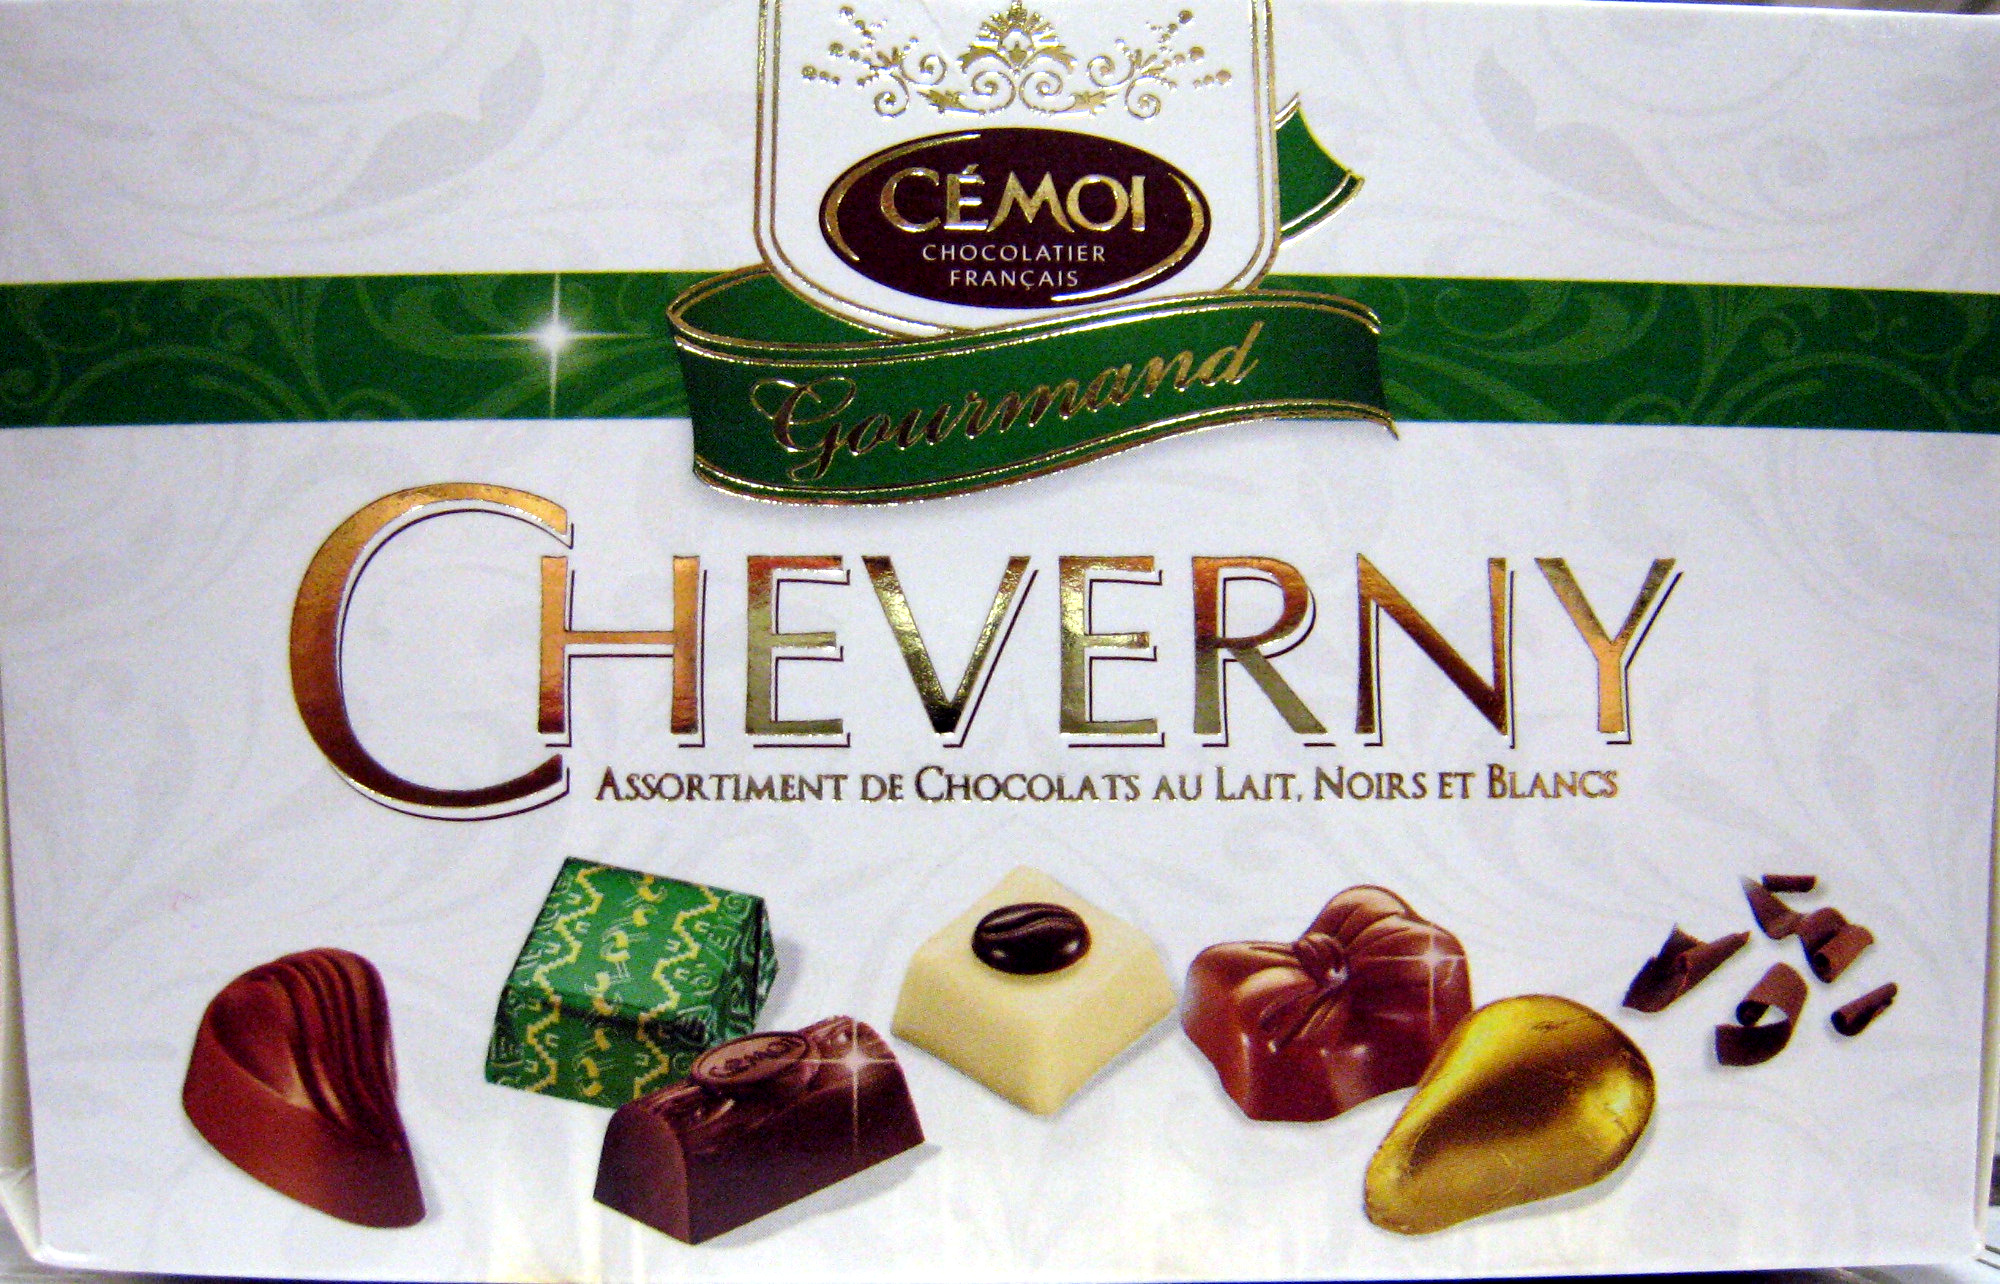 Cheverny Assortiment de chocolats au lait Noirs et Blancs - Product - fr